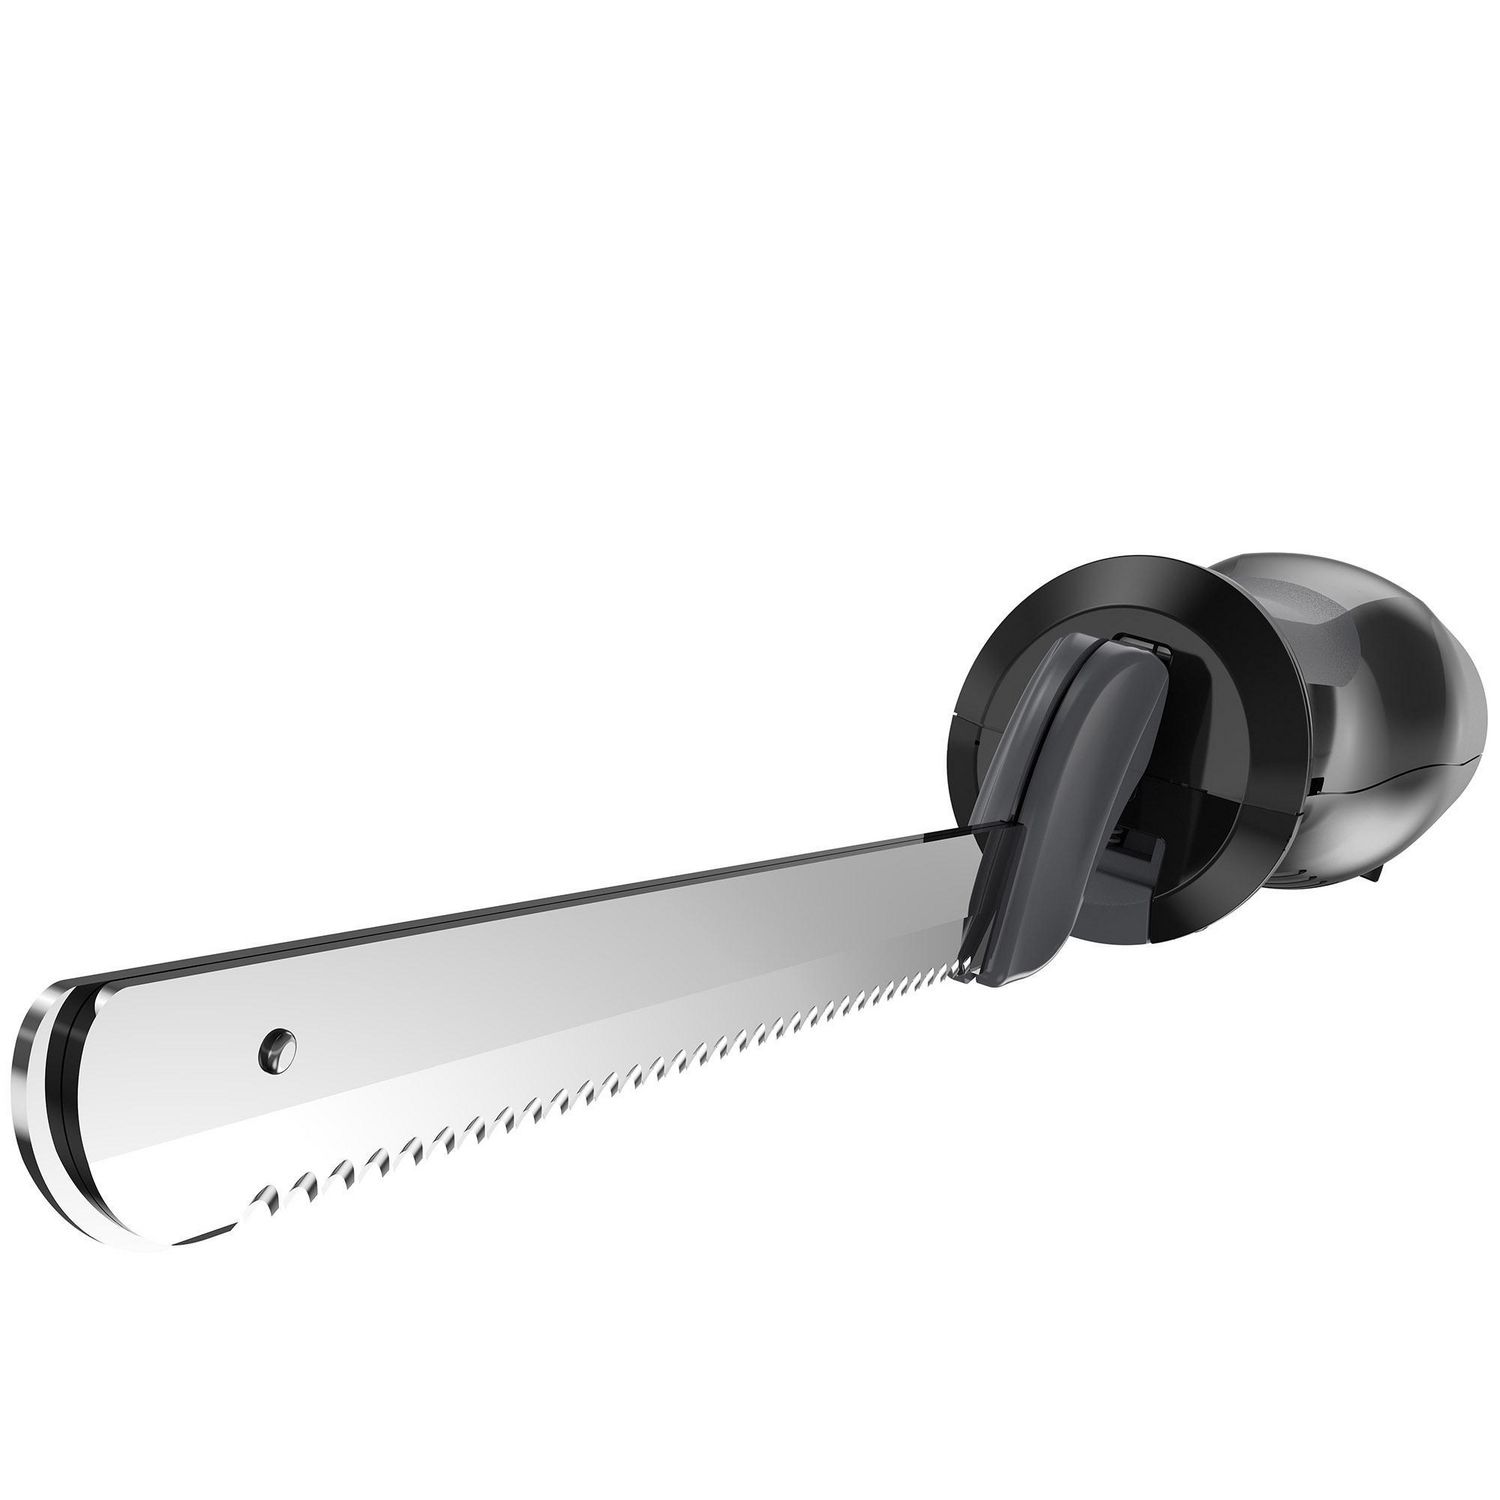 Couteau électrique sans fil, 9W, 47 cm, acier inoxydable - Unold